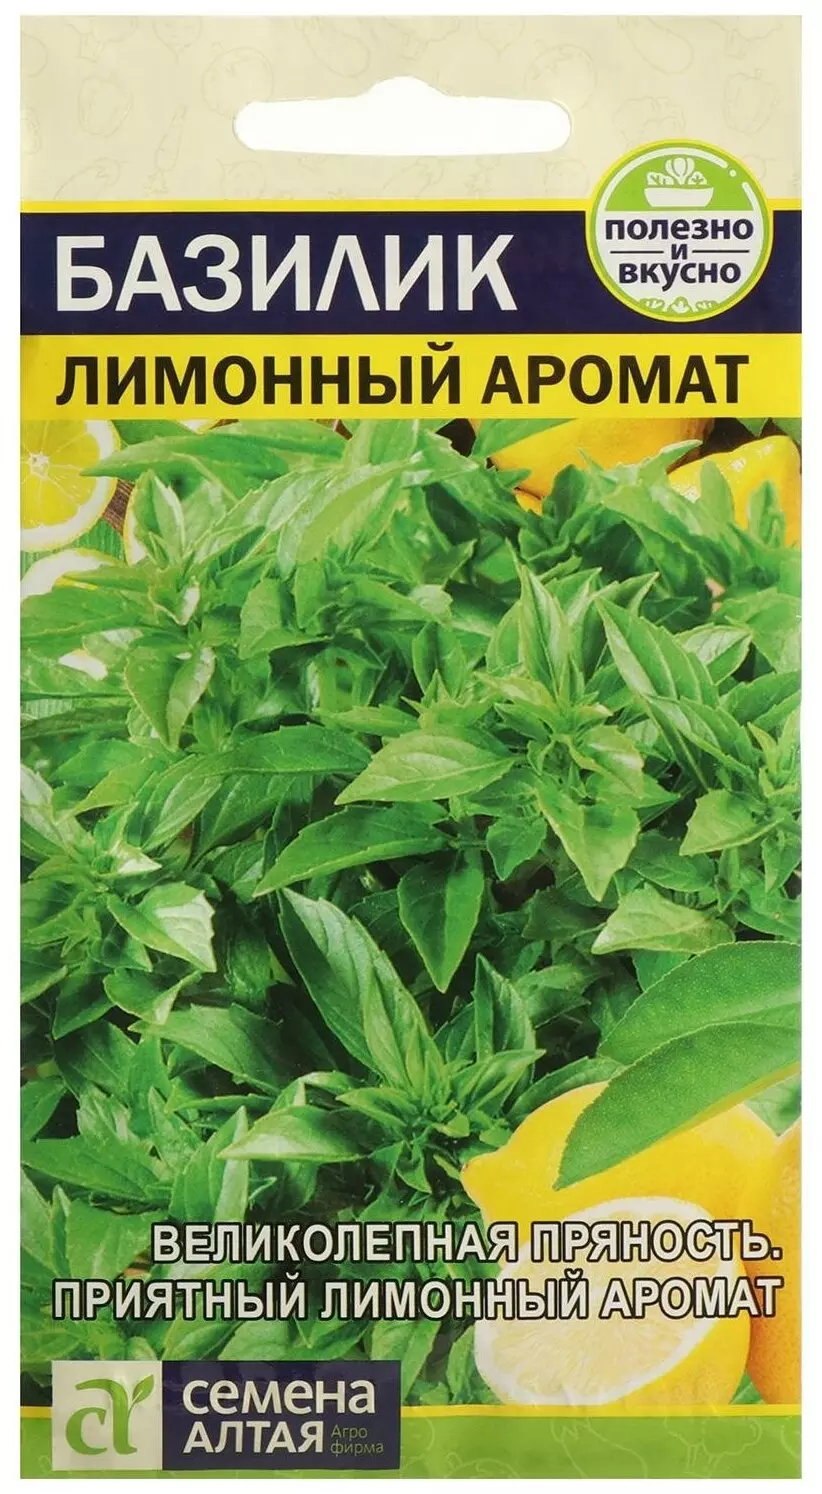 Семена Базилик Лимонный Аромат/Сем Алт/цп 0,3 гр. — купить по выгодной ценев интернет-магазине Колорлон